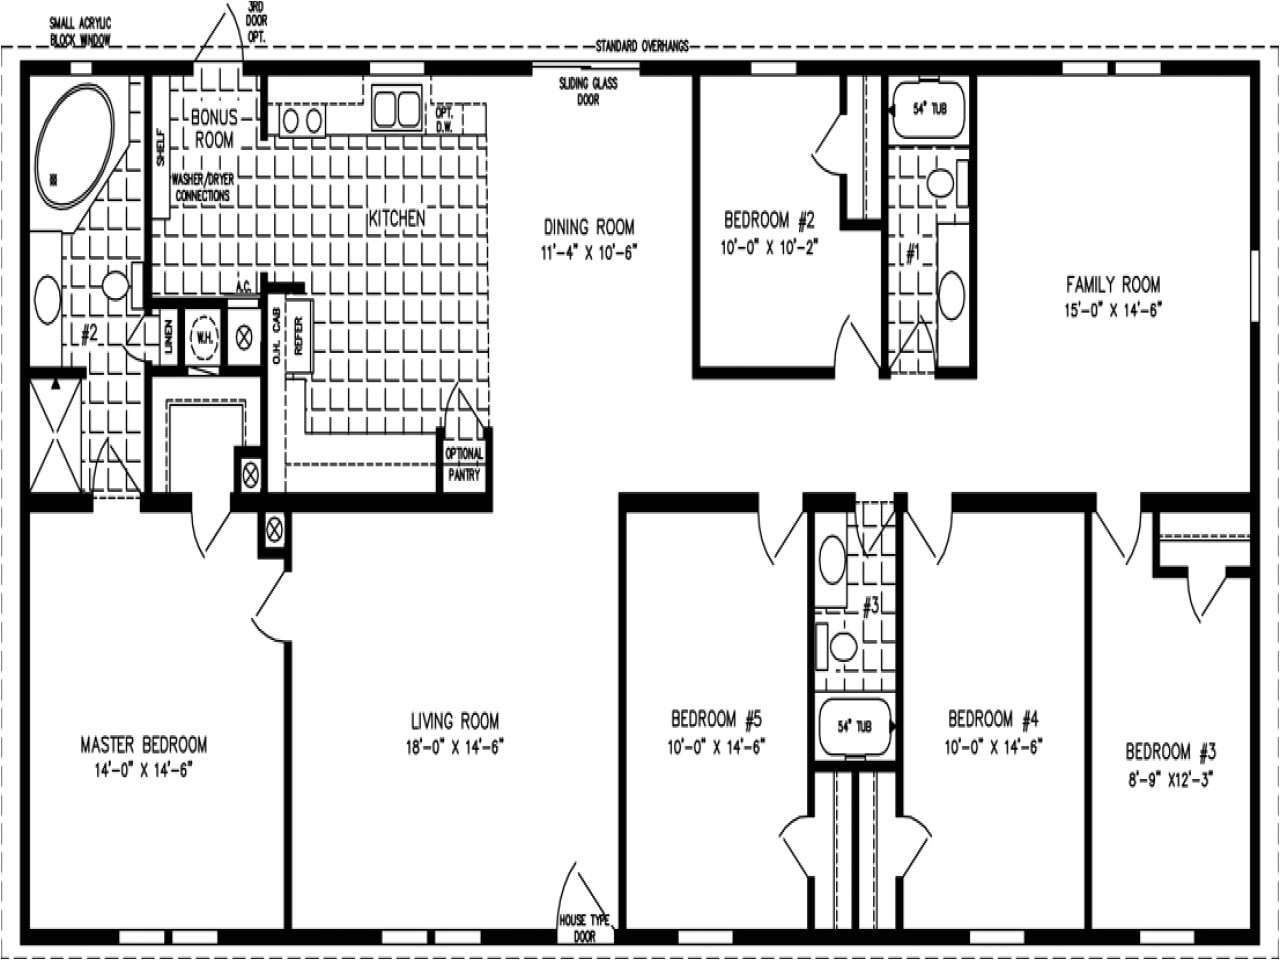 6 Bedroom Manufactured Home Floor Plan 5 Bedroom Mobile Home Floor Plans 6 Bedroom Double Wides